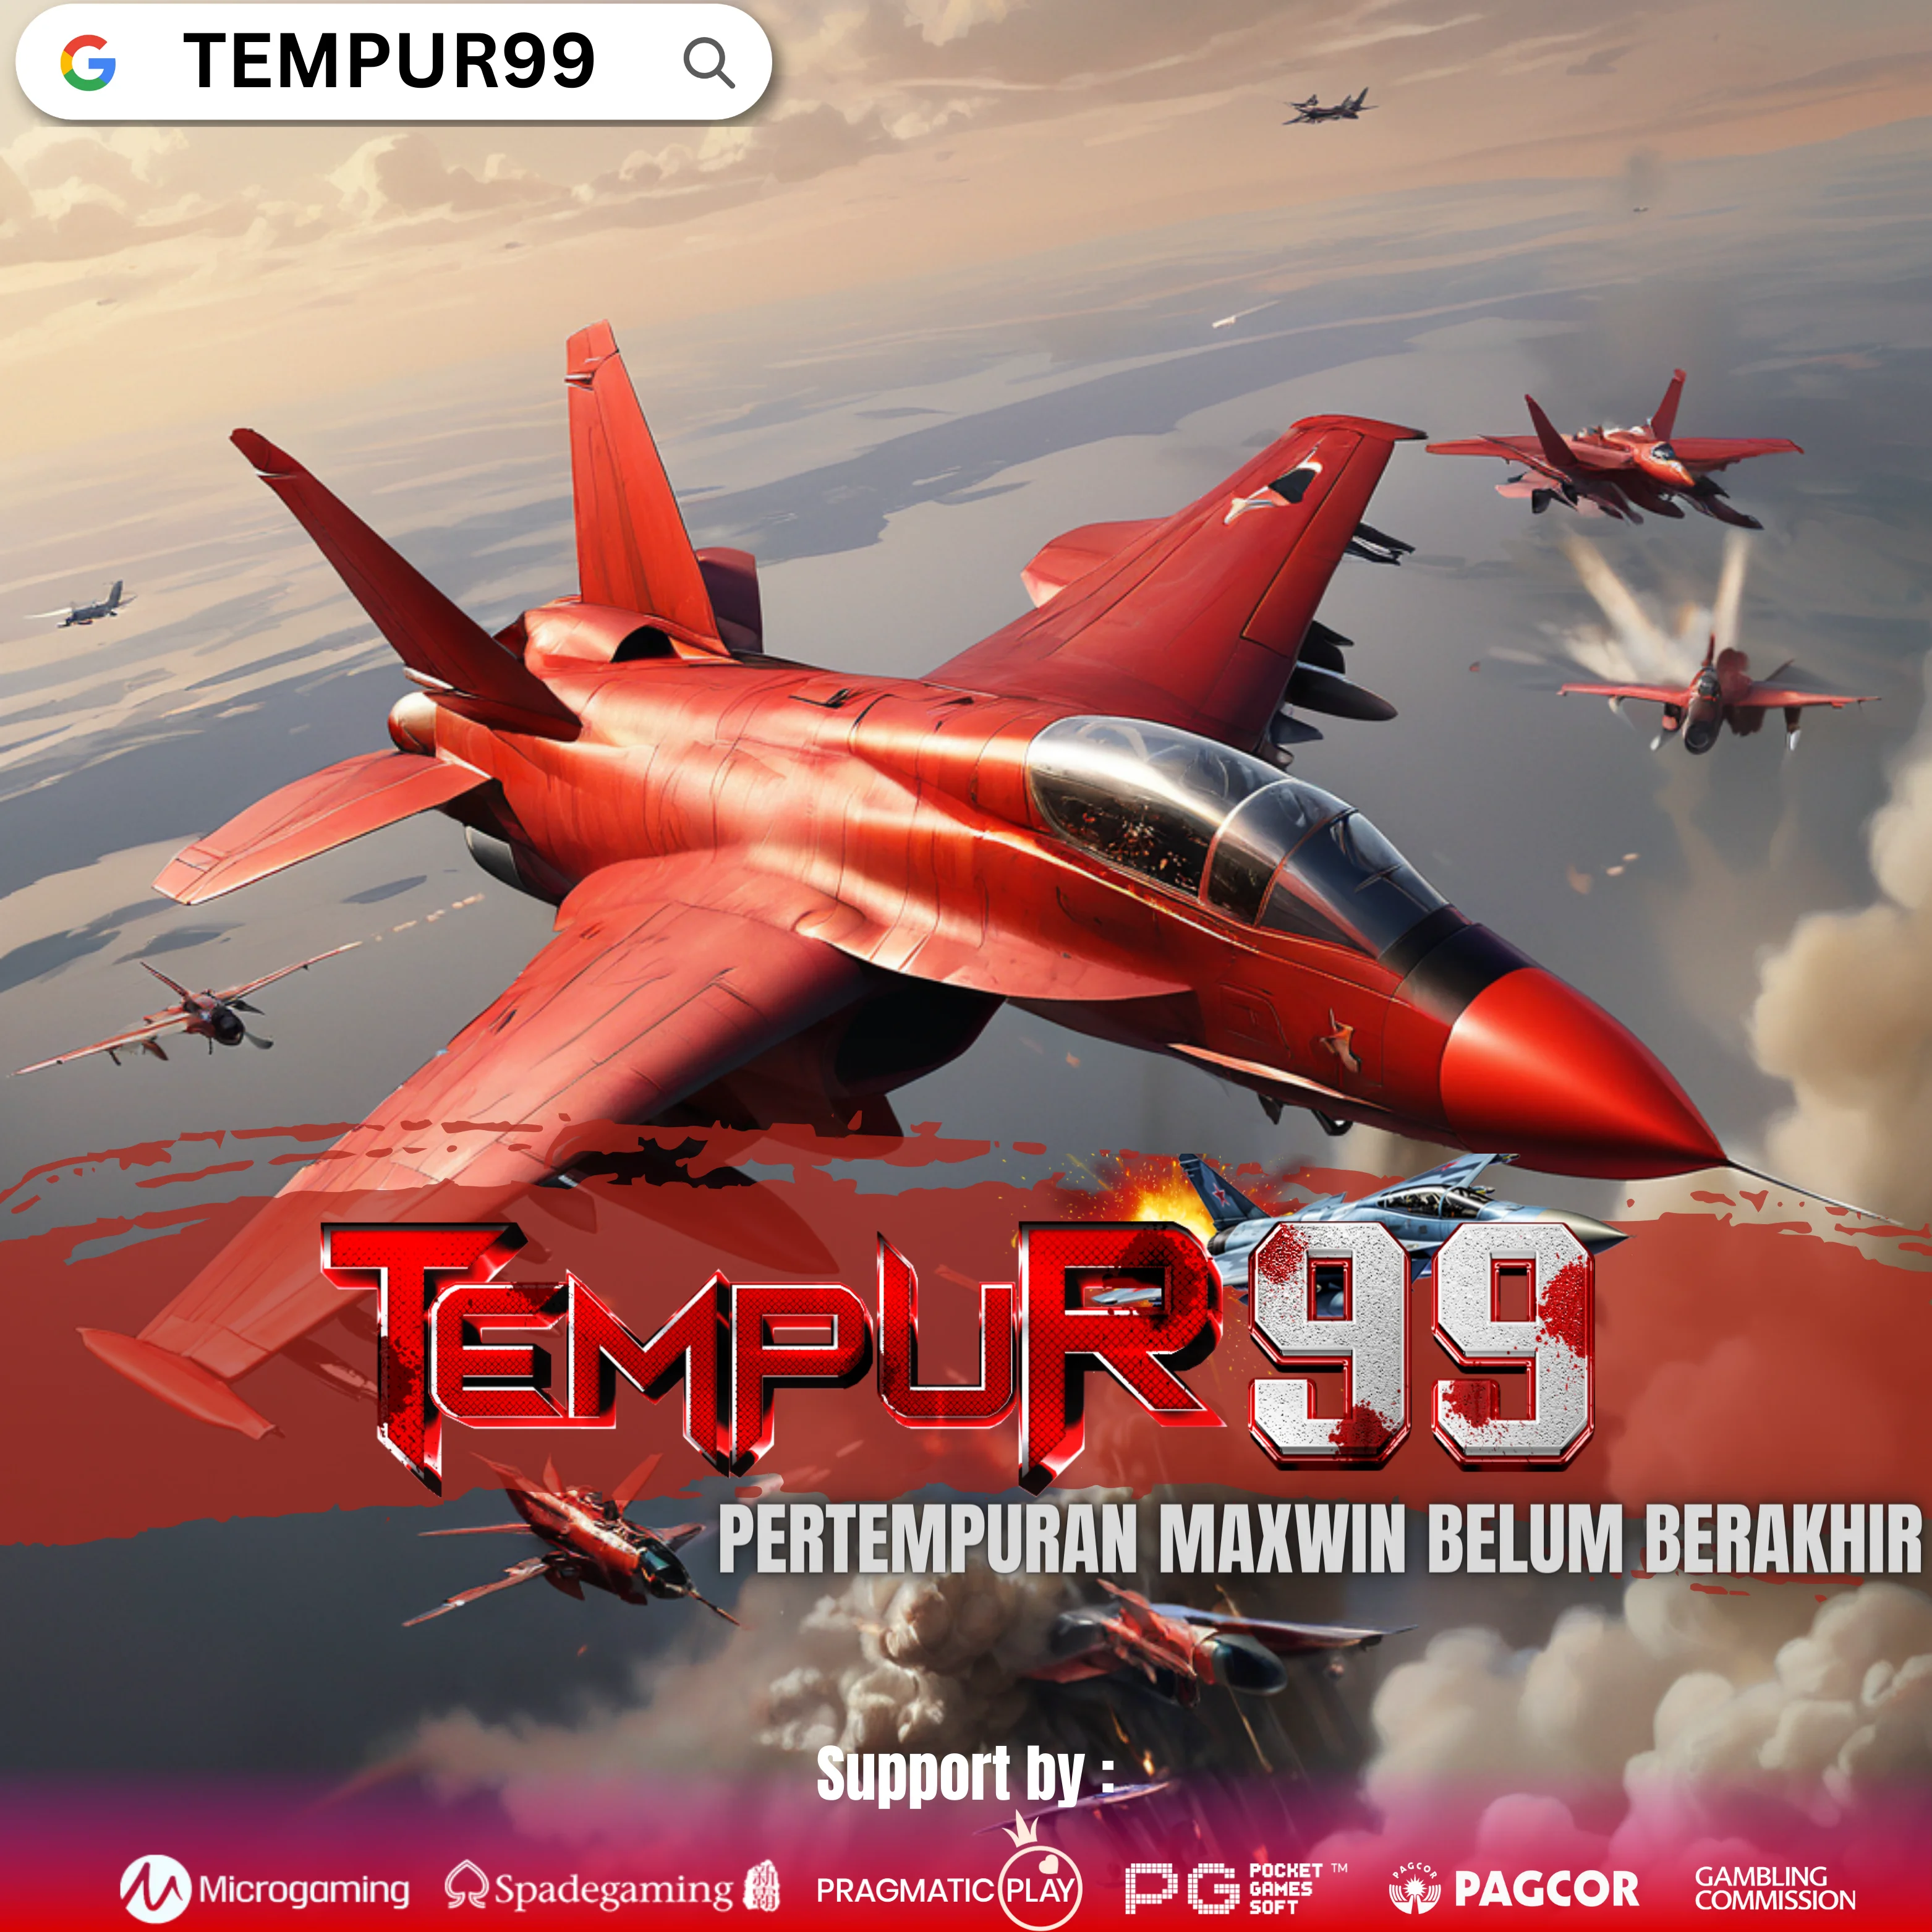 Tempur99